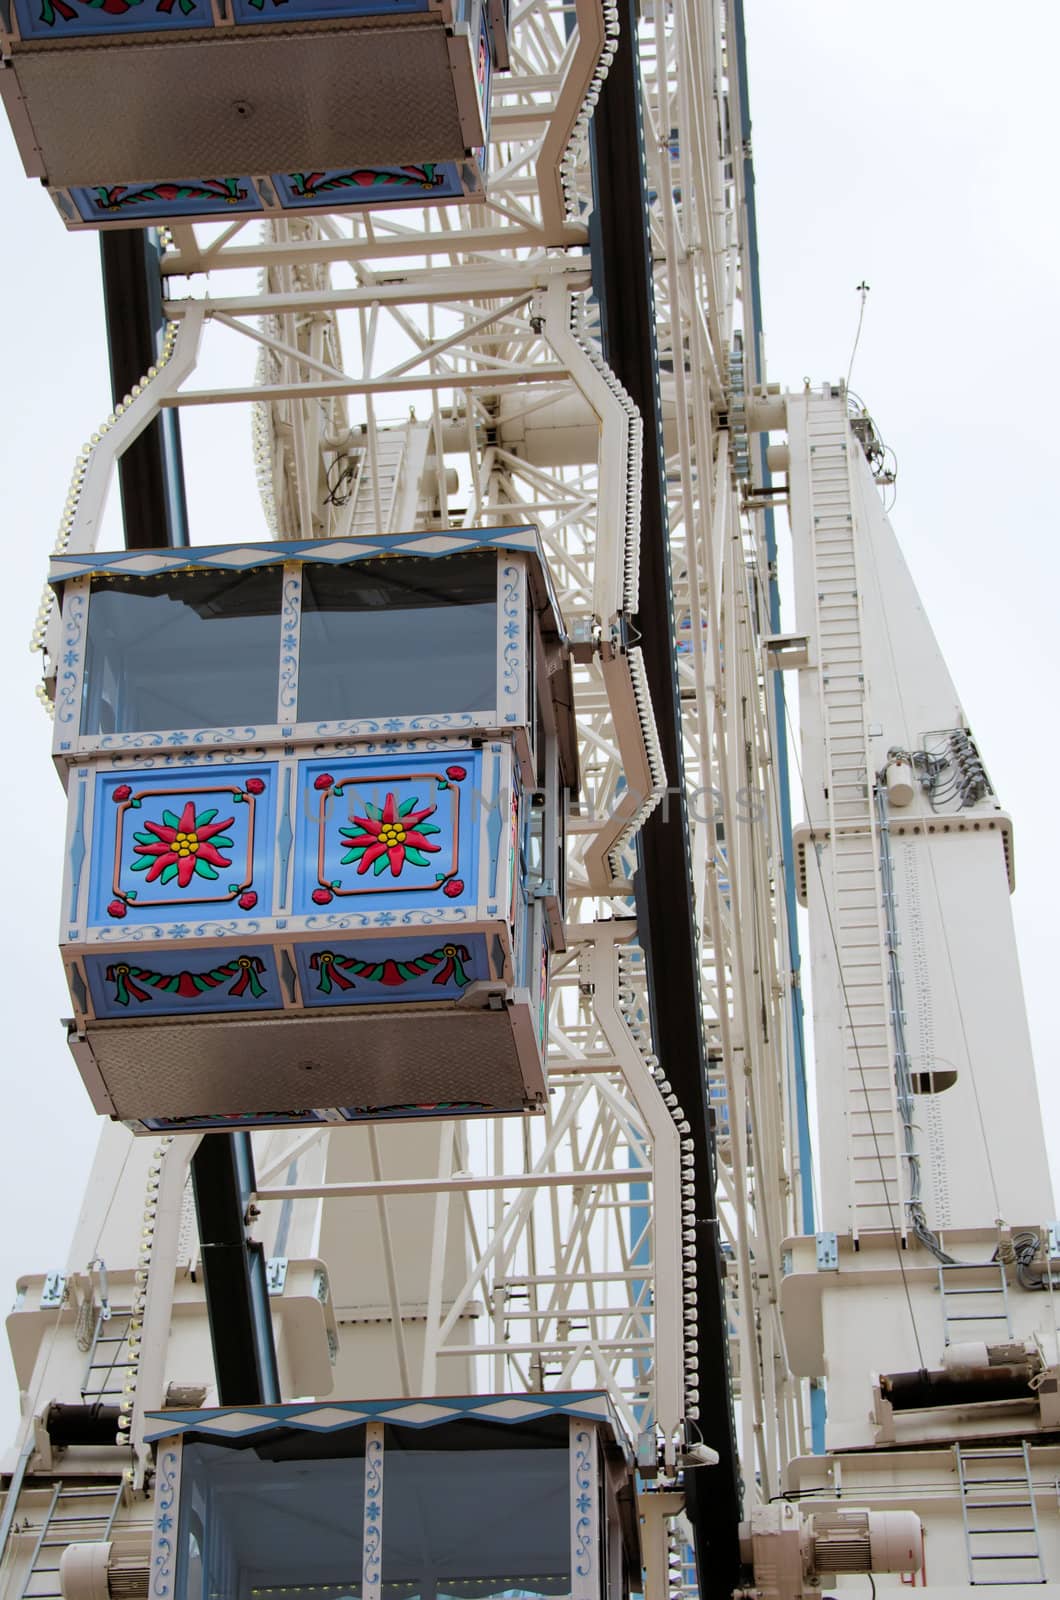 the Ferris wheel in a park by njaj